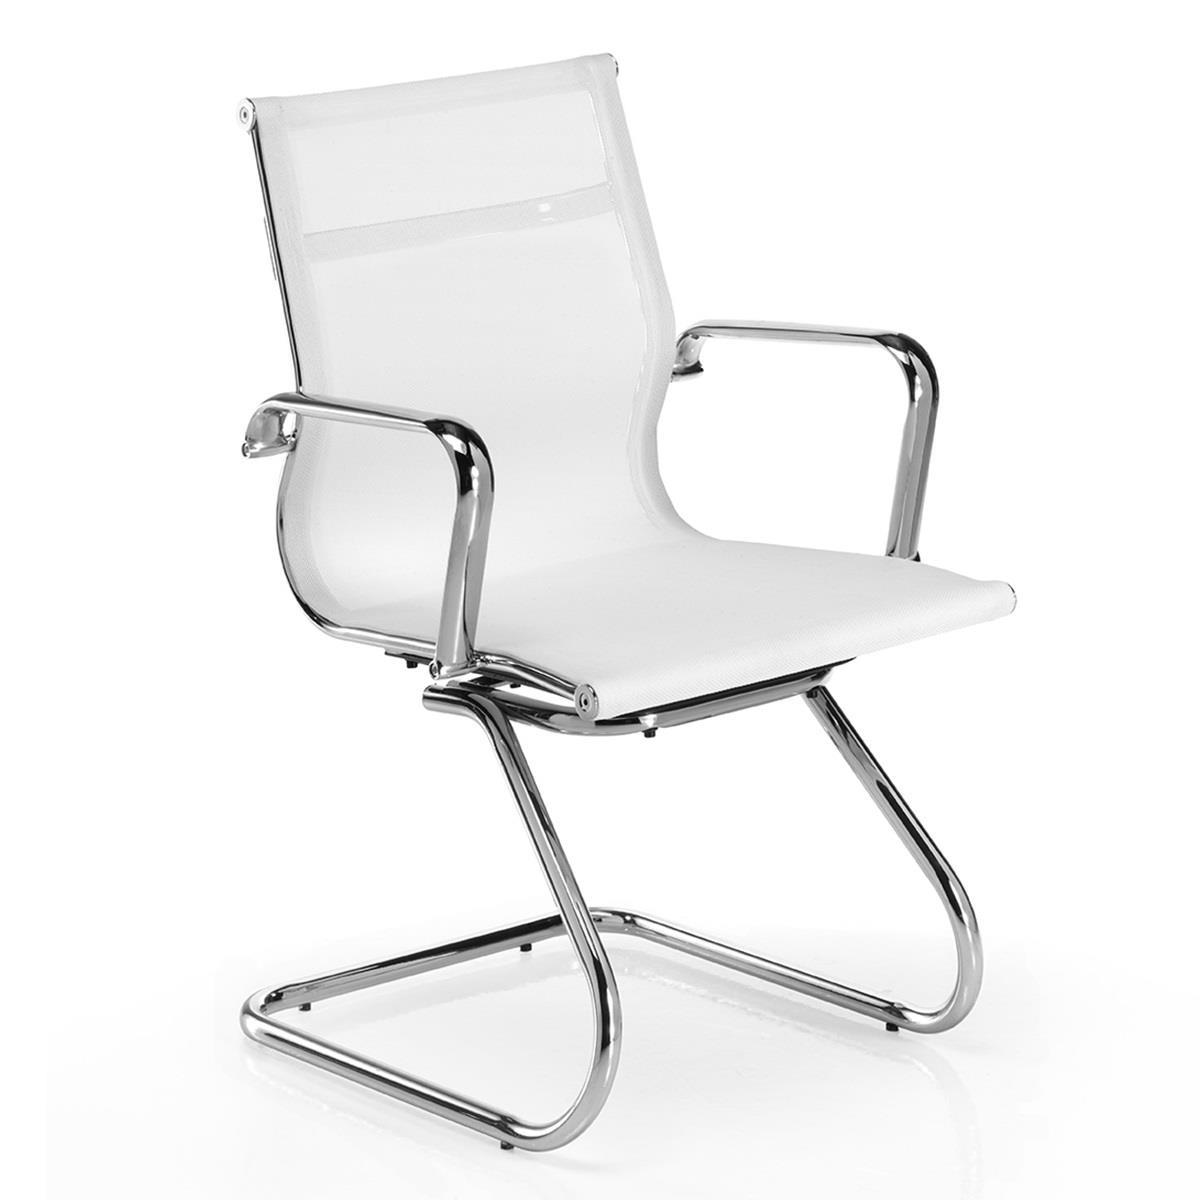 Chaise visiteur DOMI V, Structure Métallique Chromée, Design élégant, En Maille, Blanc